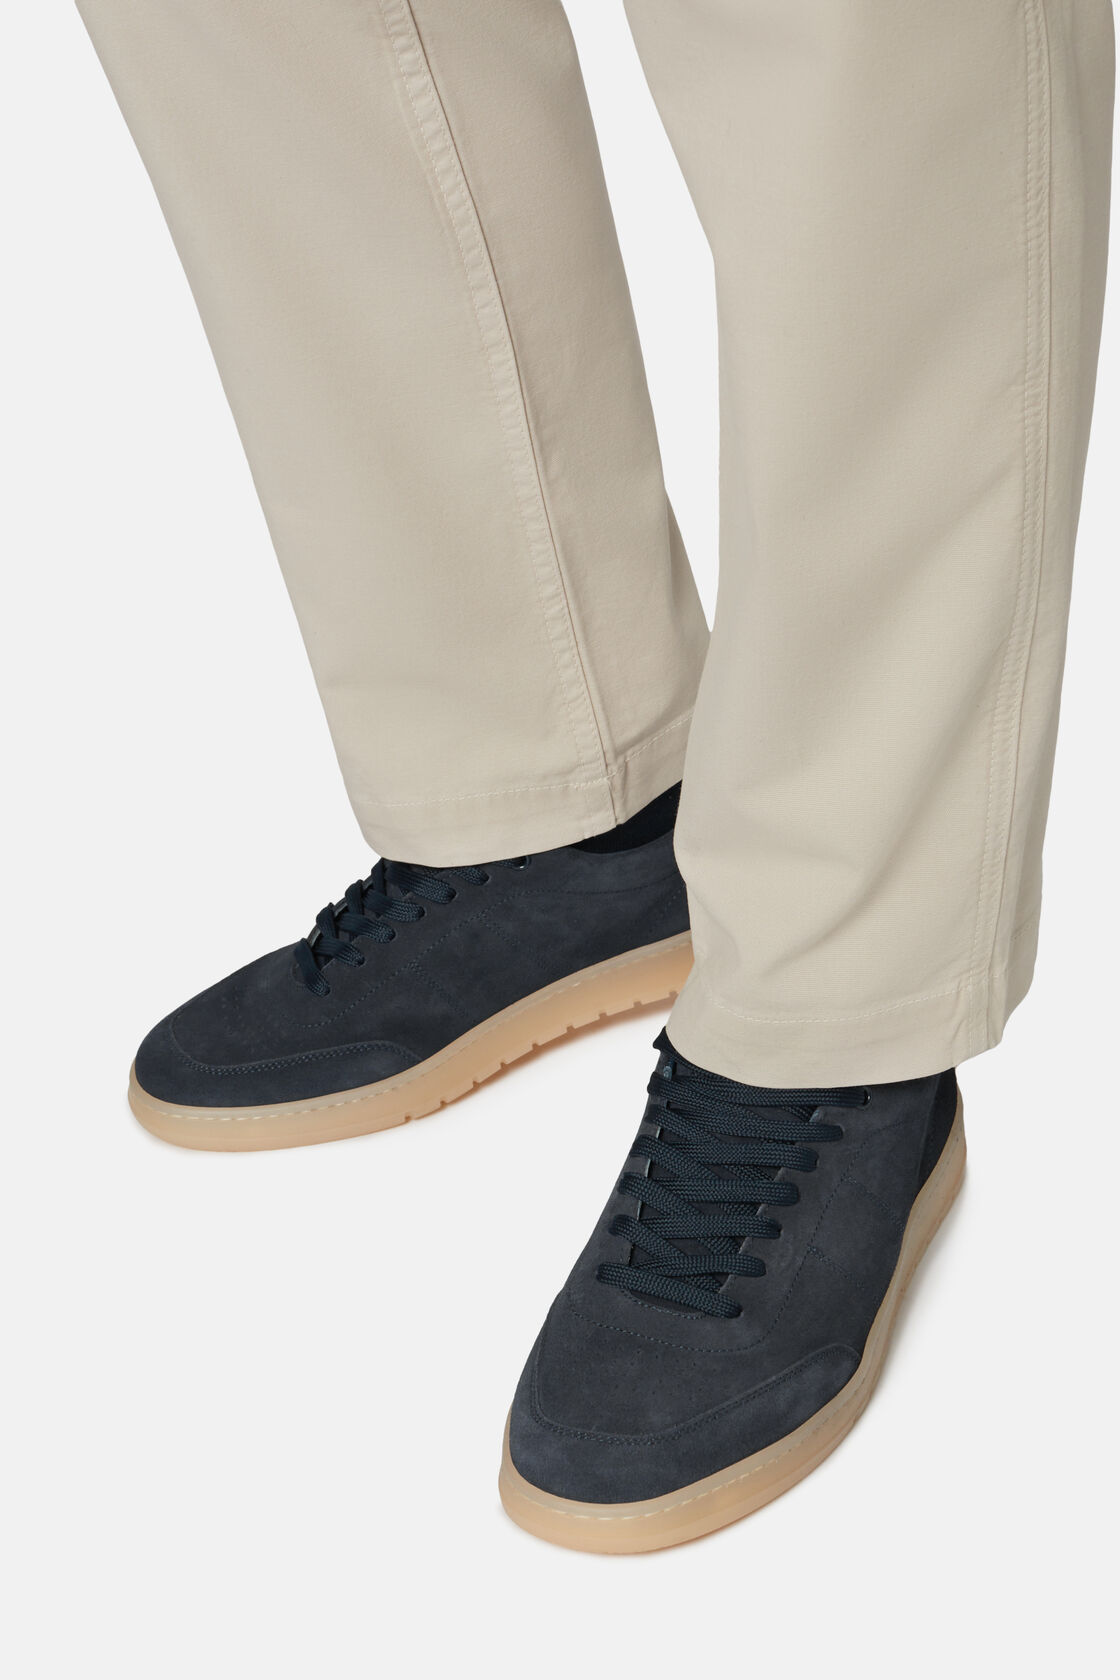 Granatowe zamszowe buty sportowe, Navy blue, hi-res